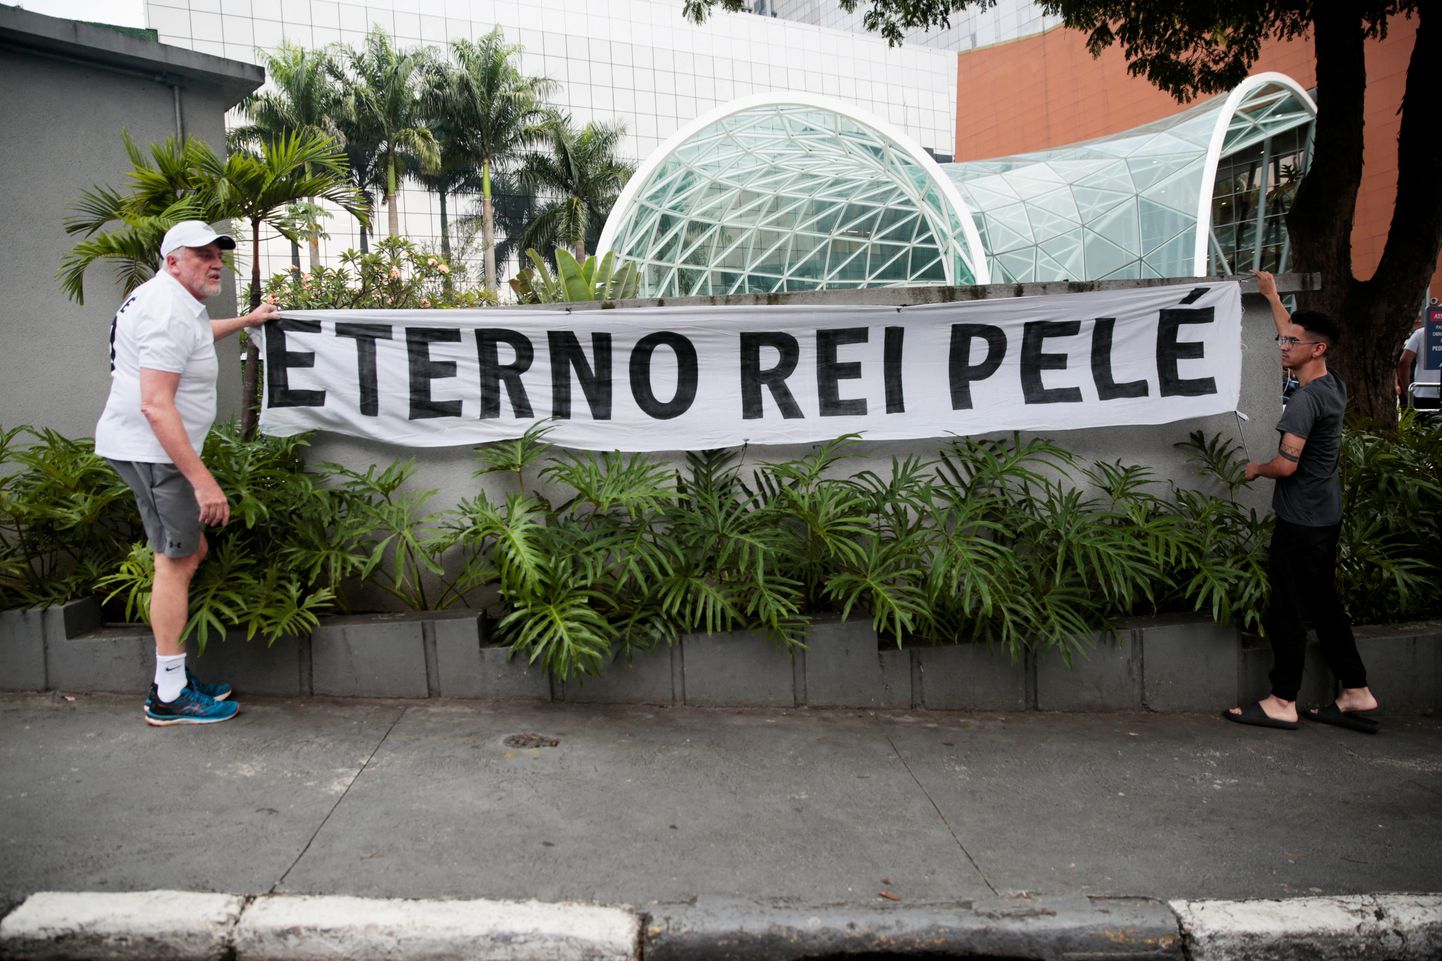 Люди скорбят. Баннер, на котором написано "Вечный король Пеле", растянут перед больницей Альберта Энштейна, в которой Пеле проходил лечение.